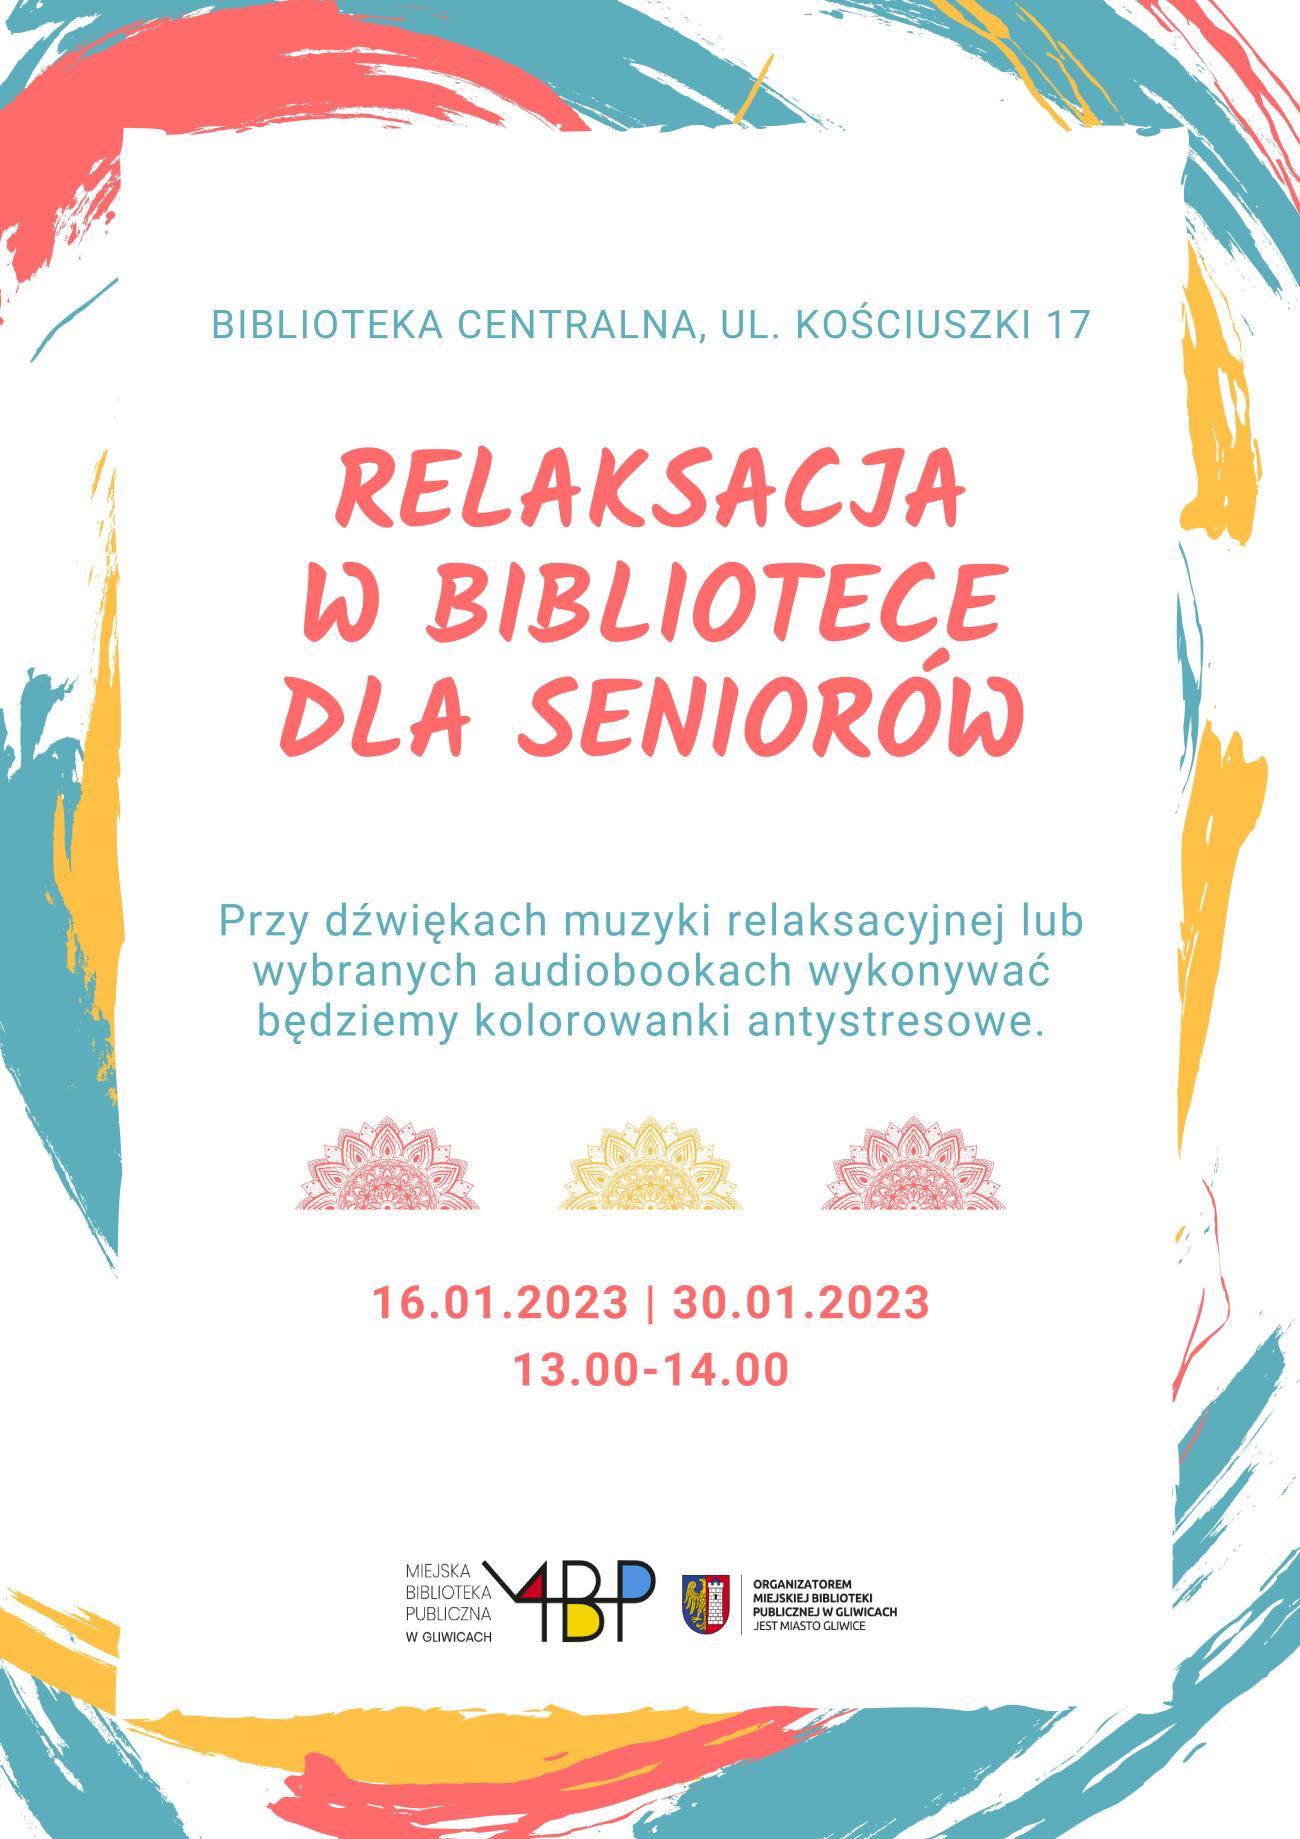 Plakat z informacją o relaksacji w bibliotece dla seniorów